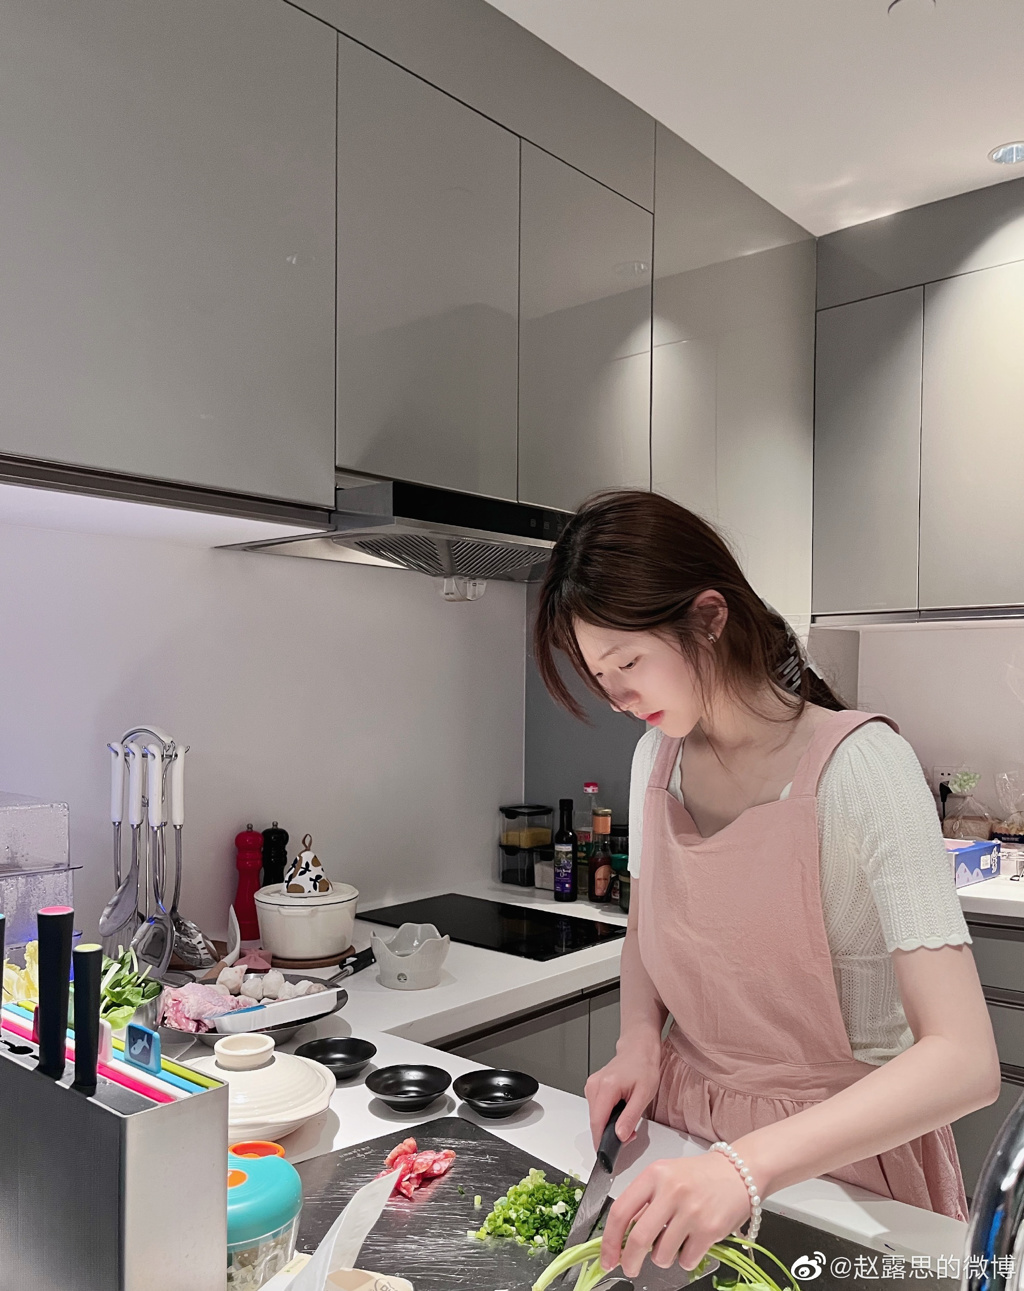 趙露思經常在微博和粉絲分享廚藝。(圖/翻攝自微博@趙露思)
